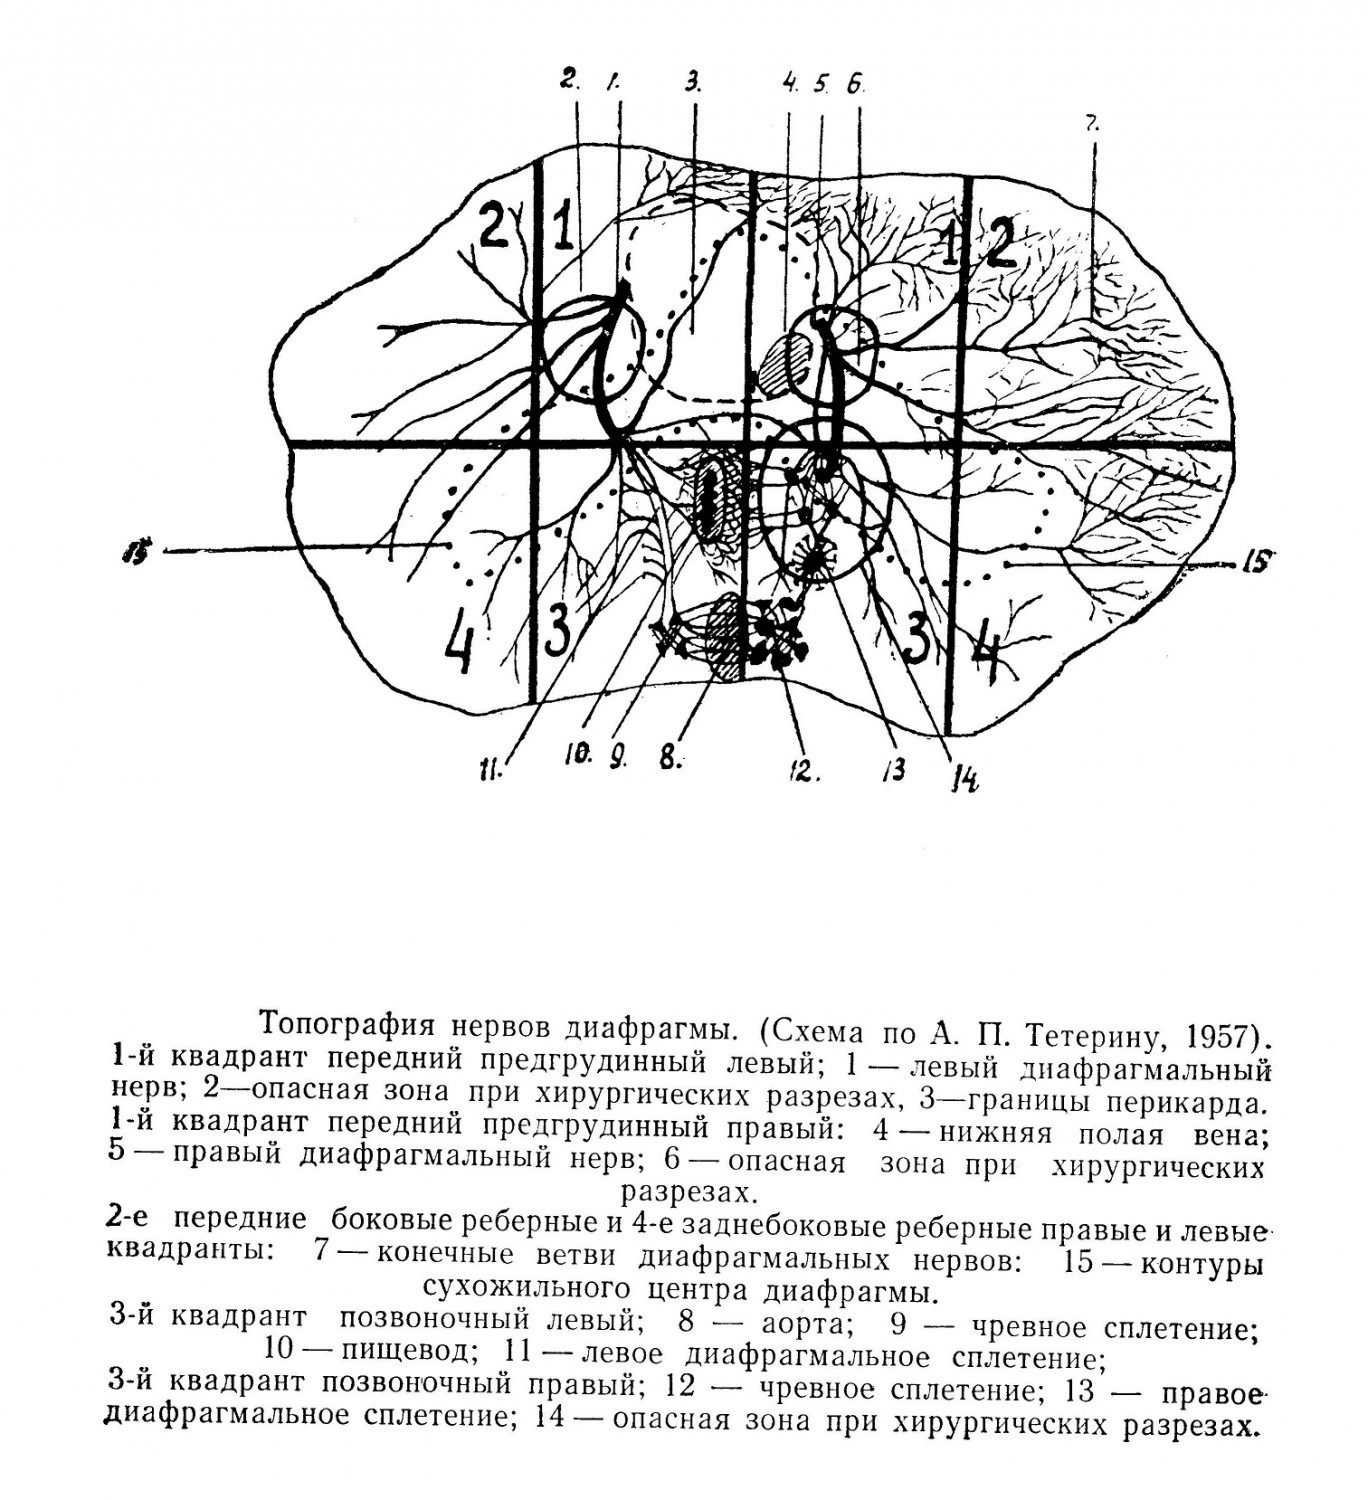 Топография нервов диафрагмы